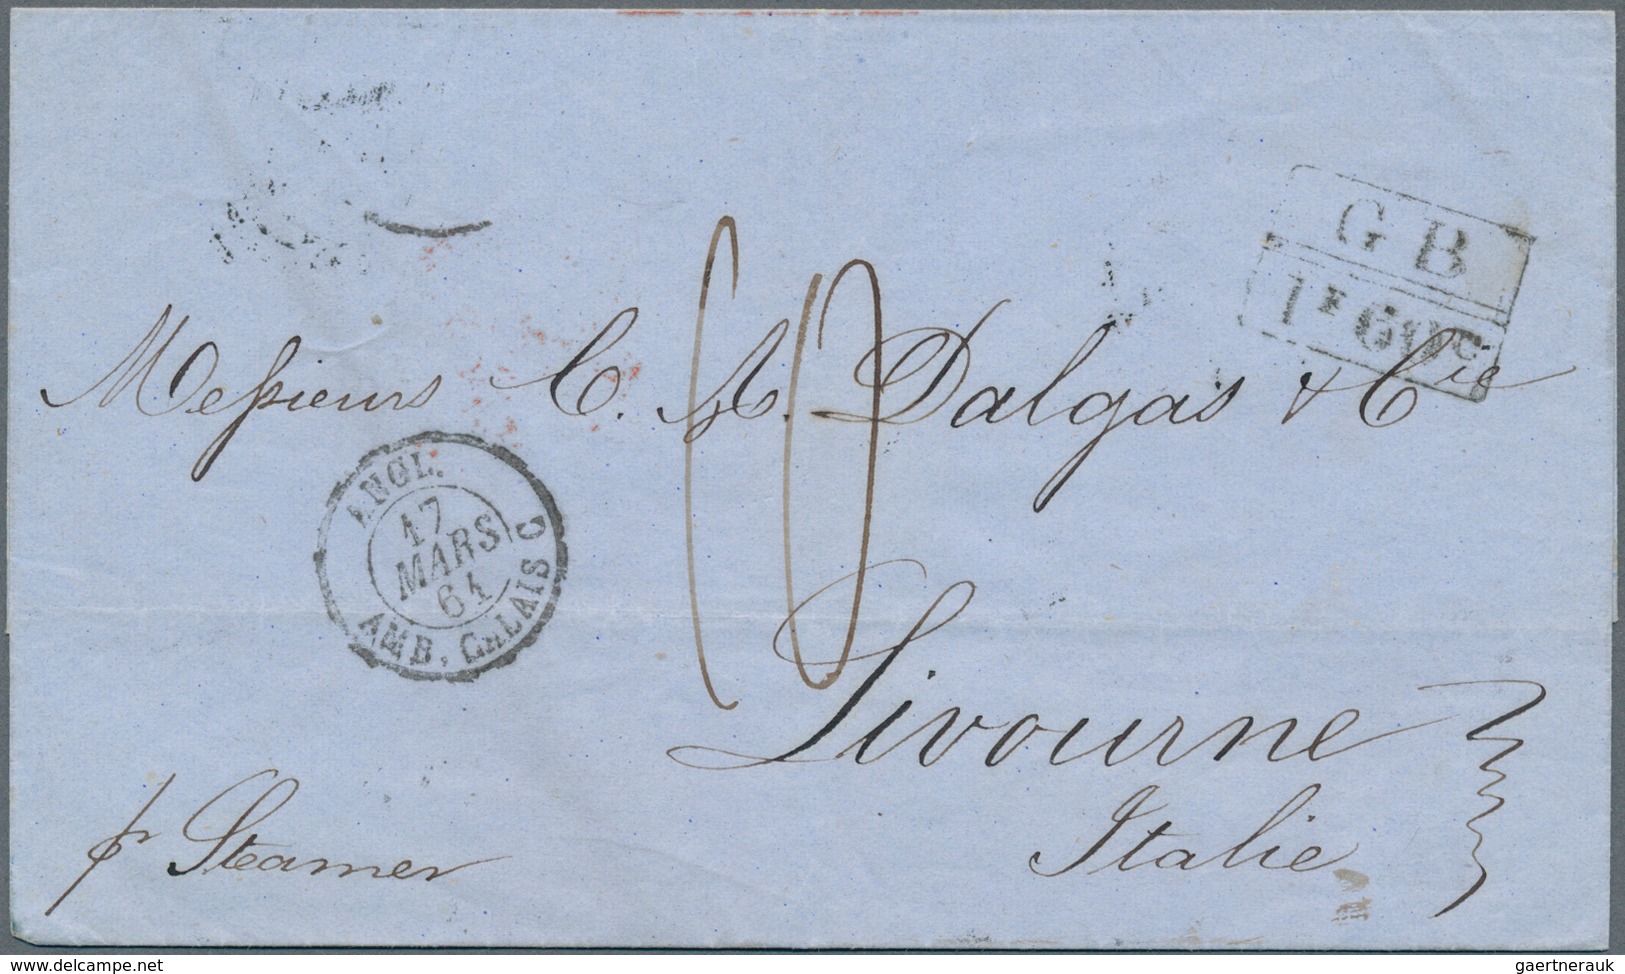 Dänisch-Westindien - Vorphilatelie: 1861, British Office: Folded Envelop Pmkd. "ST. THOMAS" FE 28 61 - Dänische Antillen (Westindien)